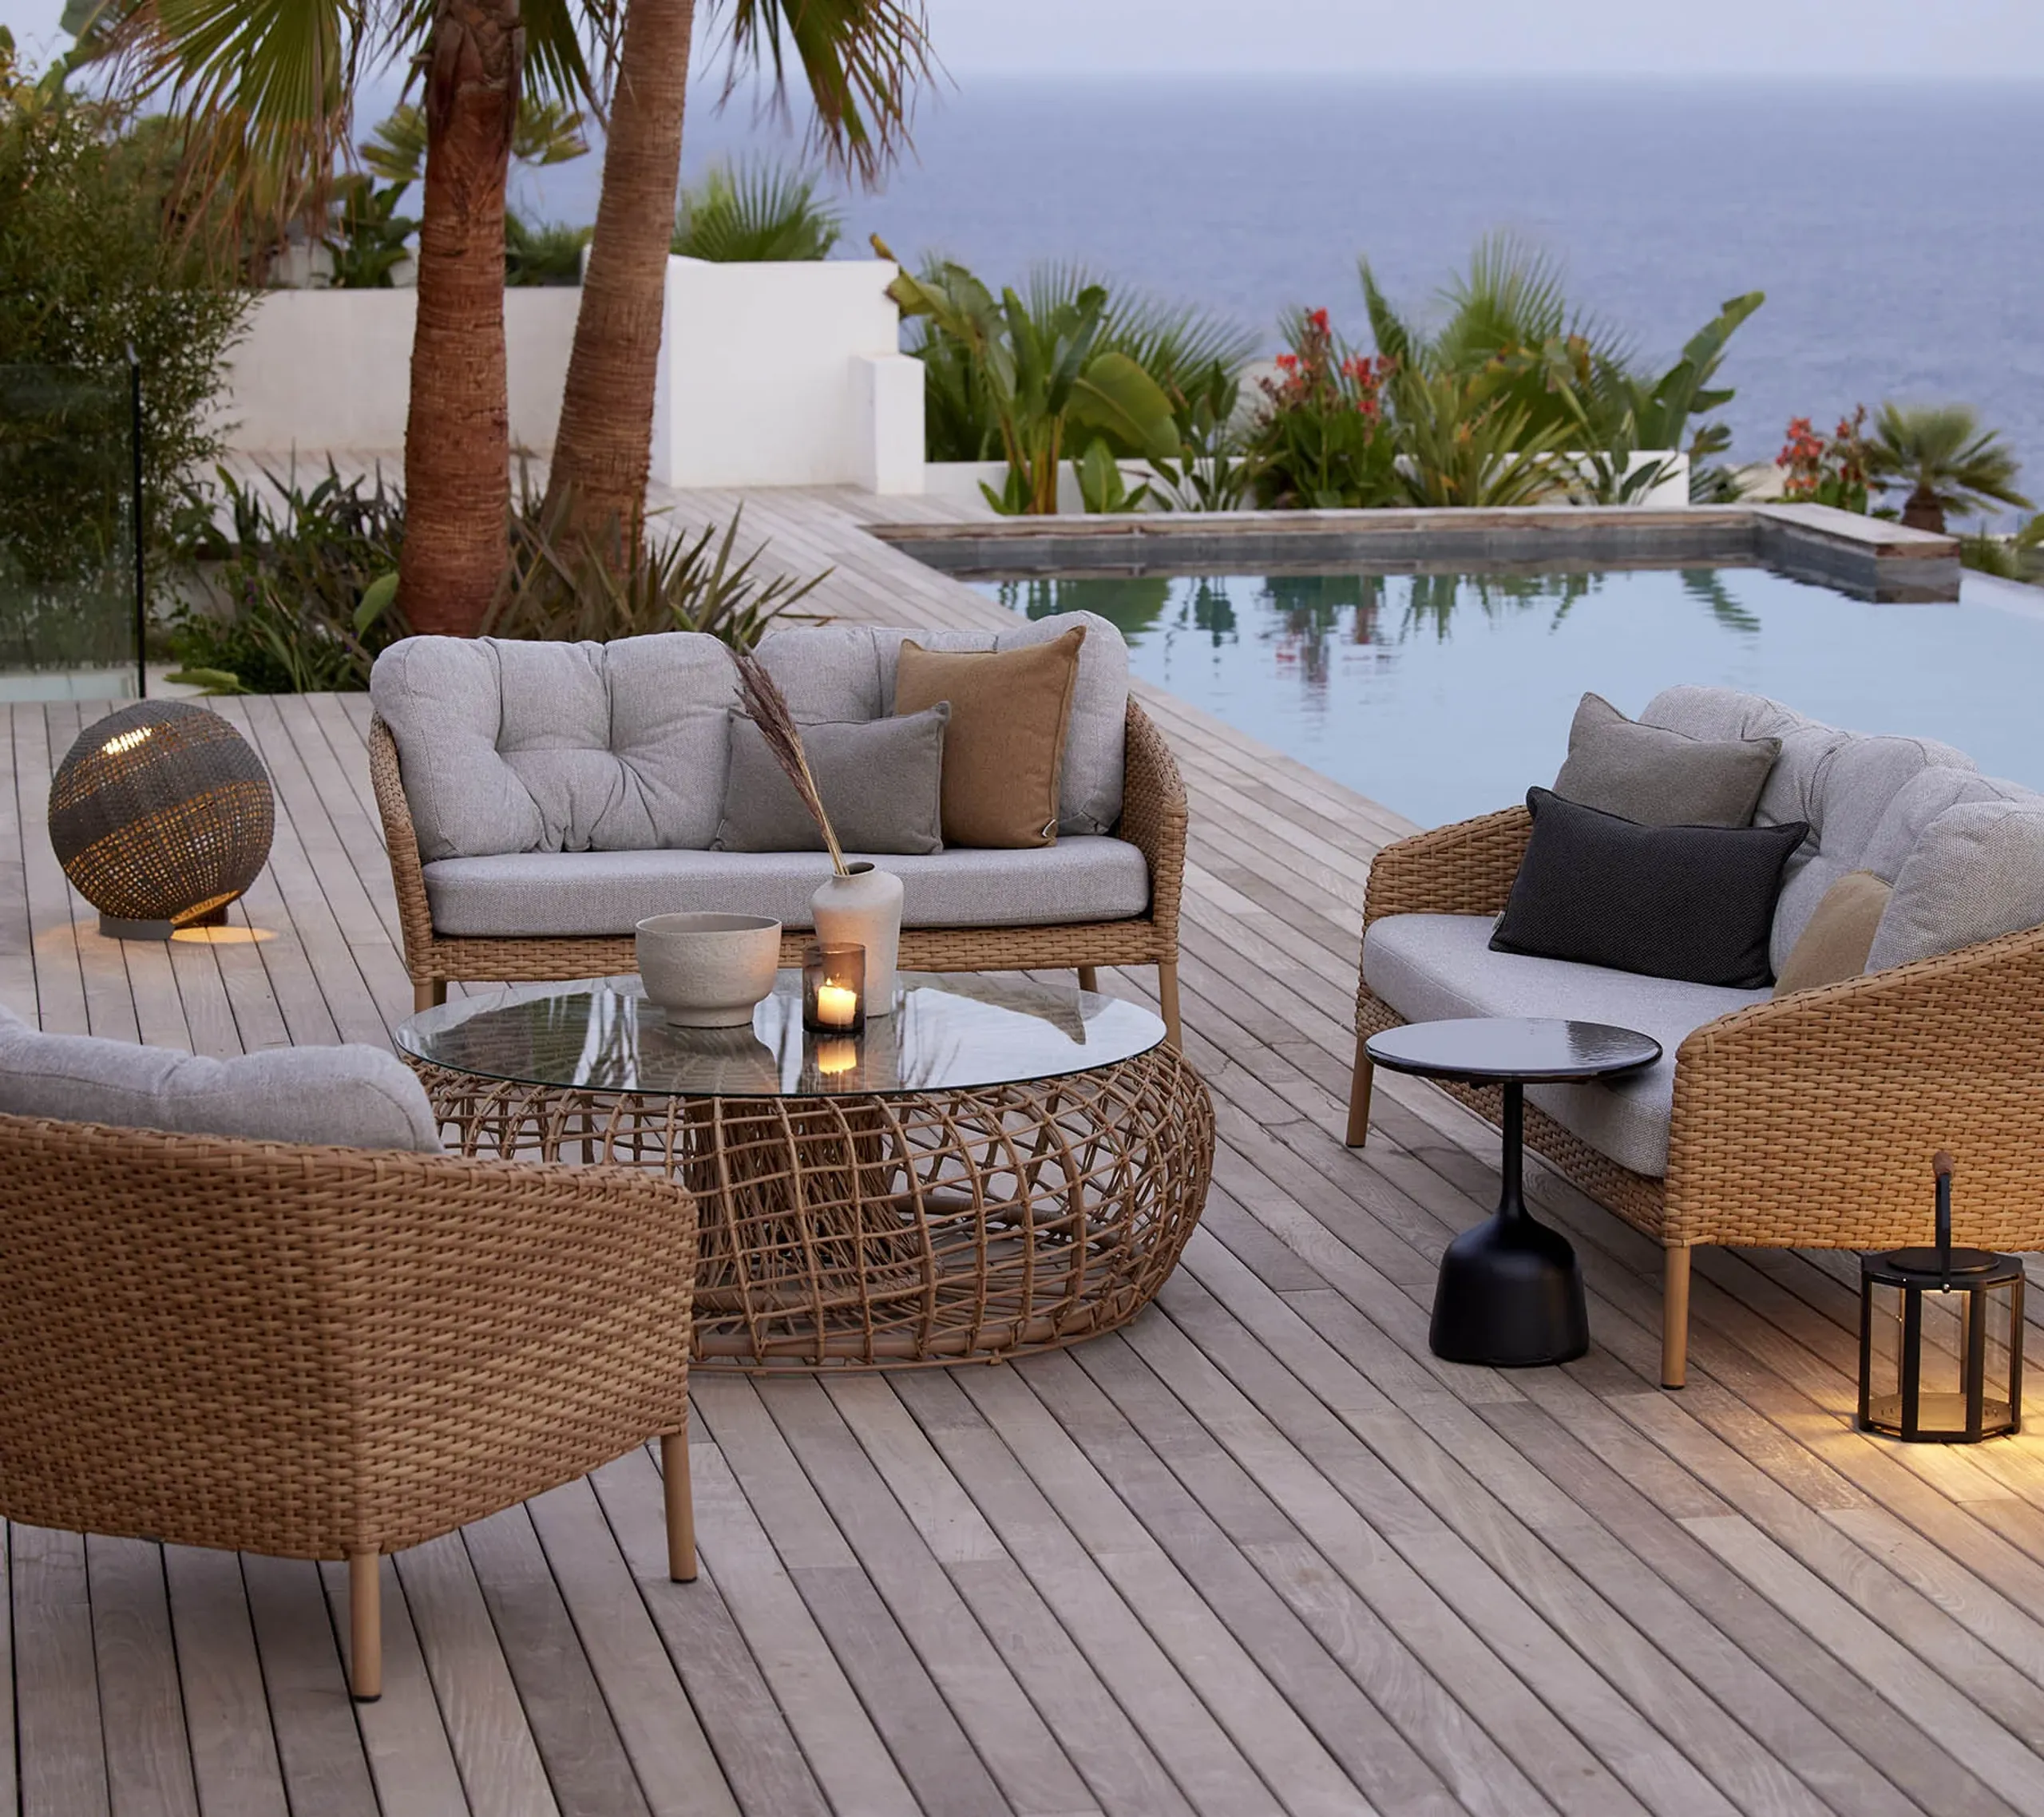 Cane-Line - Ocean lounge chair cushion set